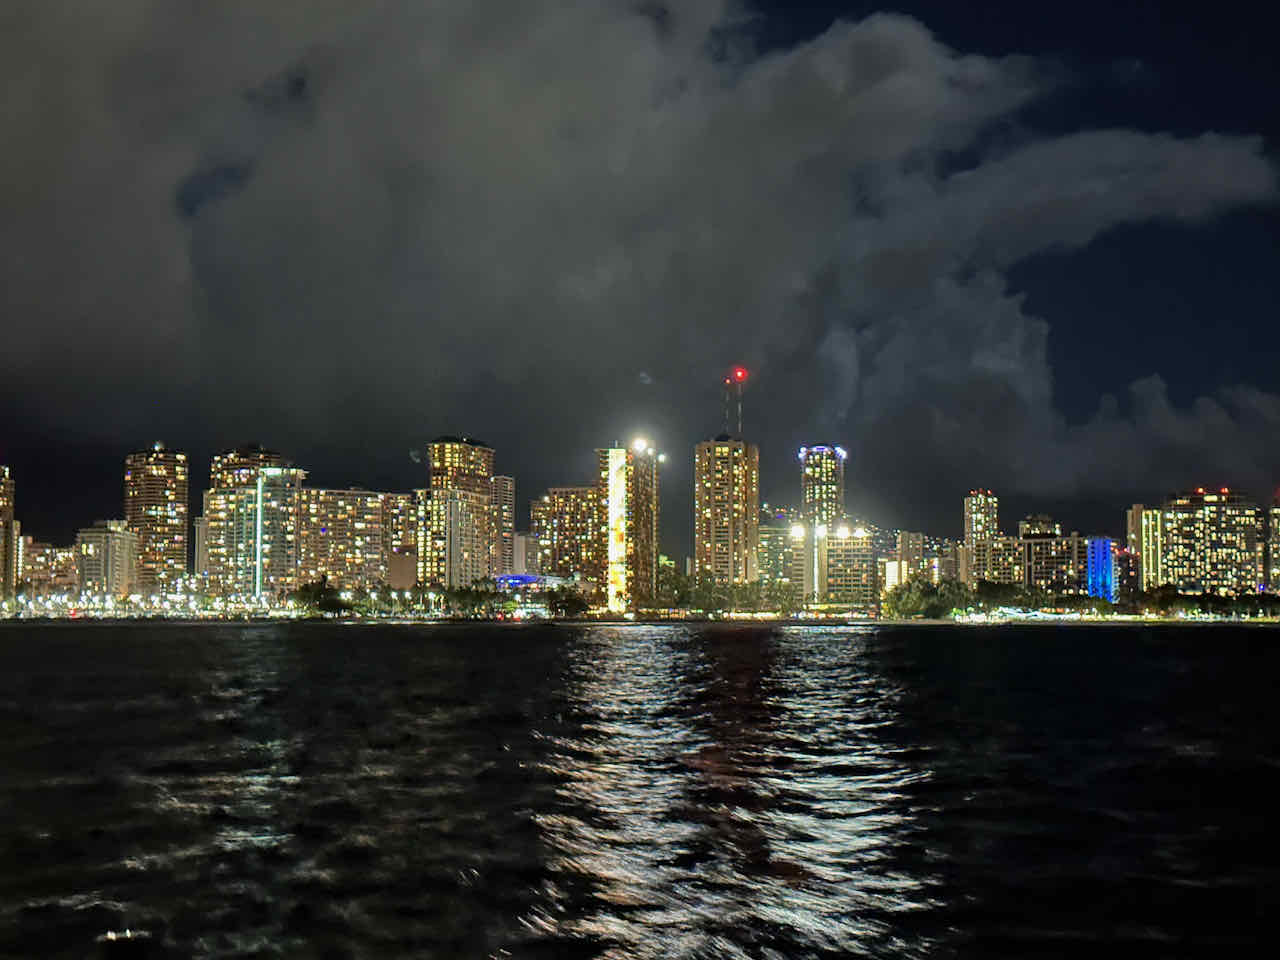 Waikiki at night from sailboat